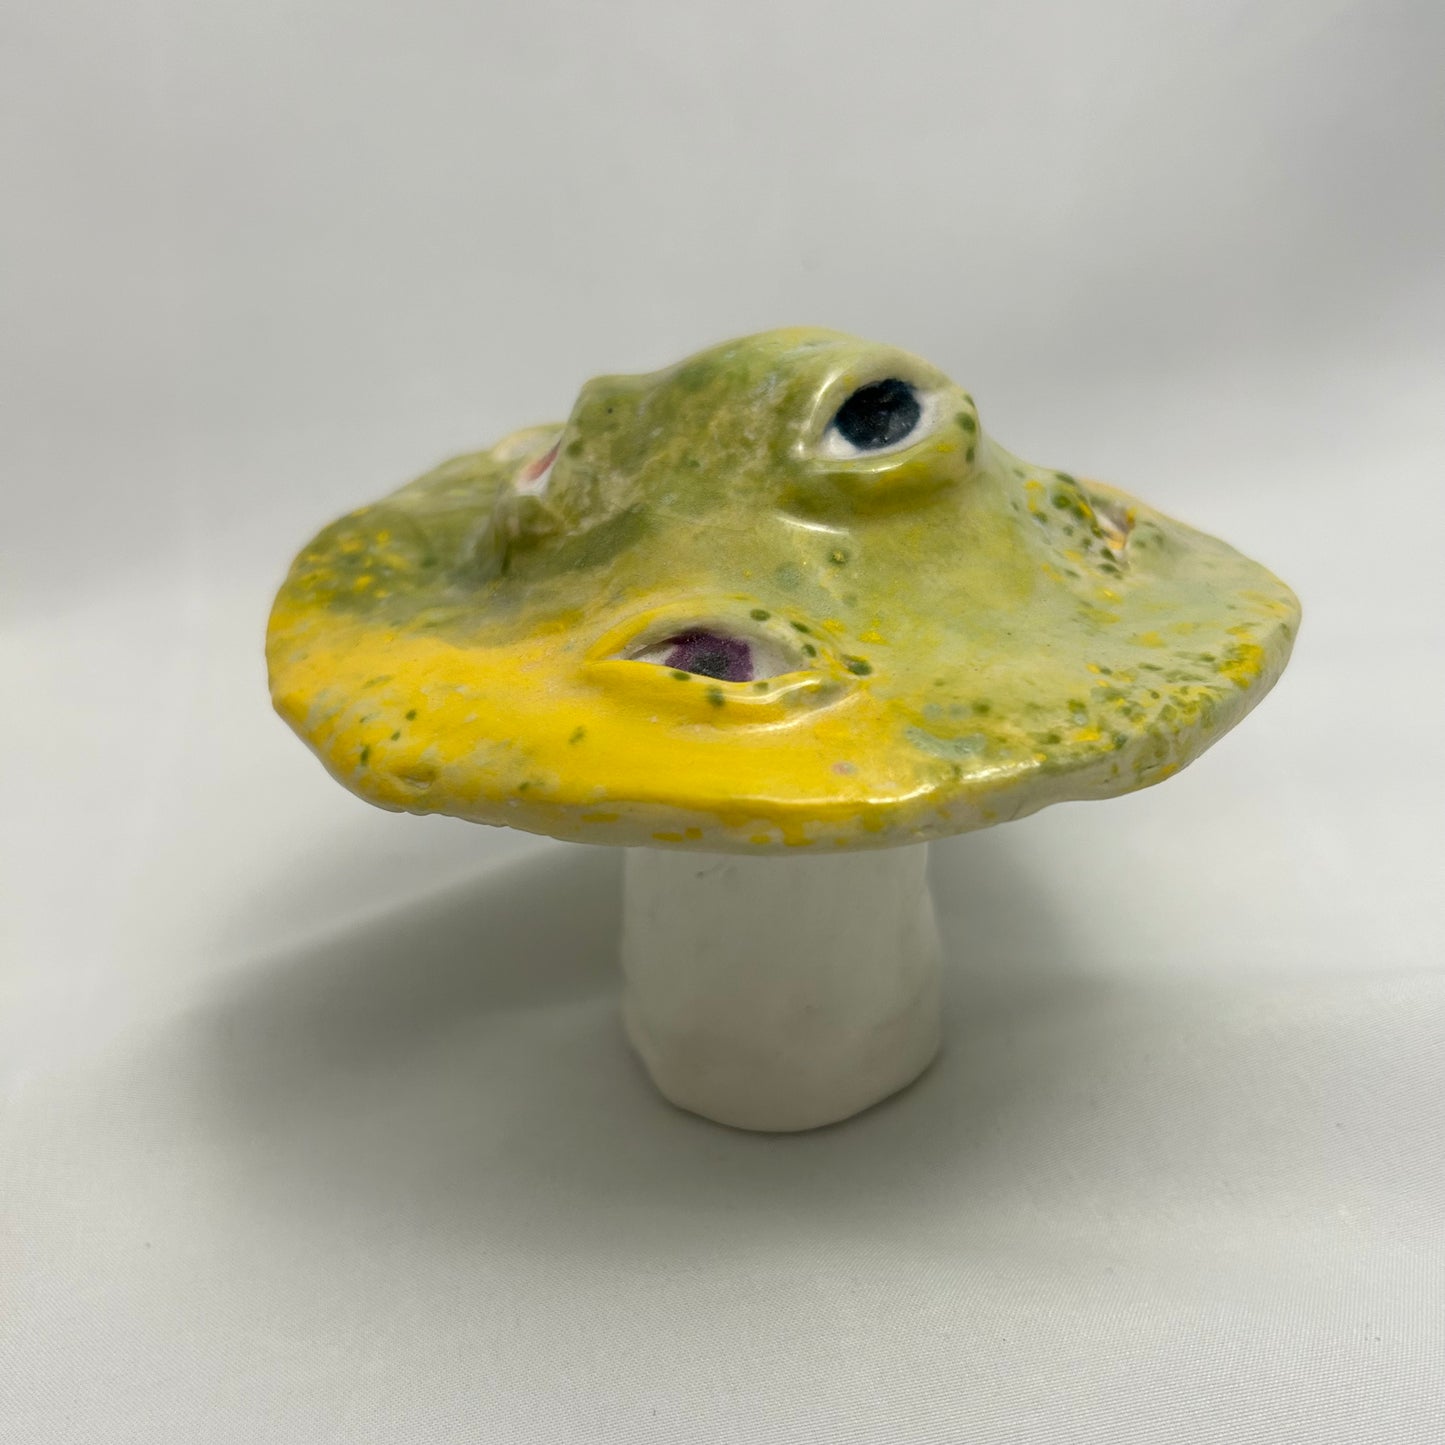 green and yellow mushroom